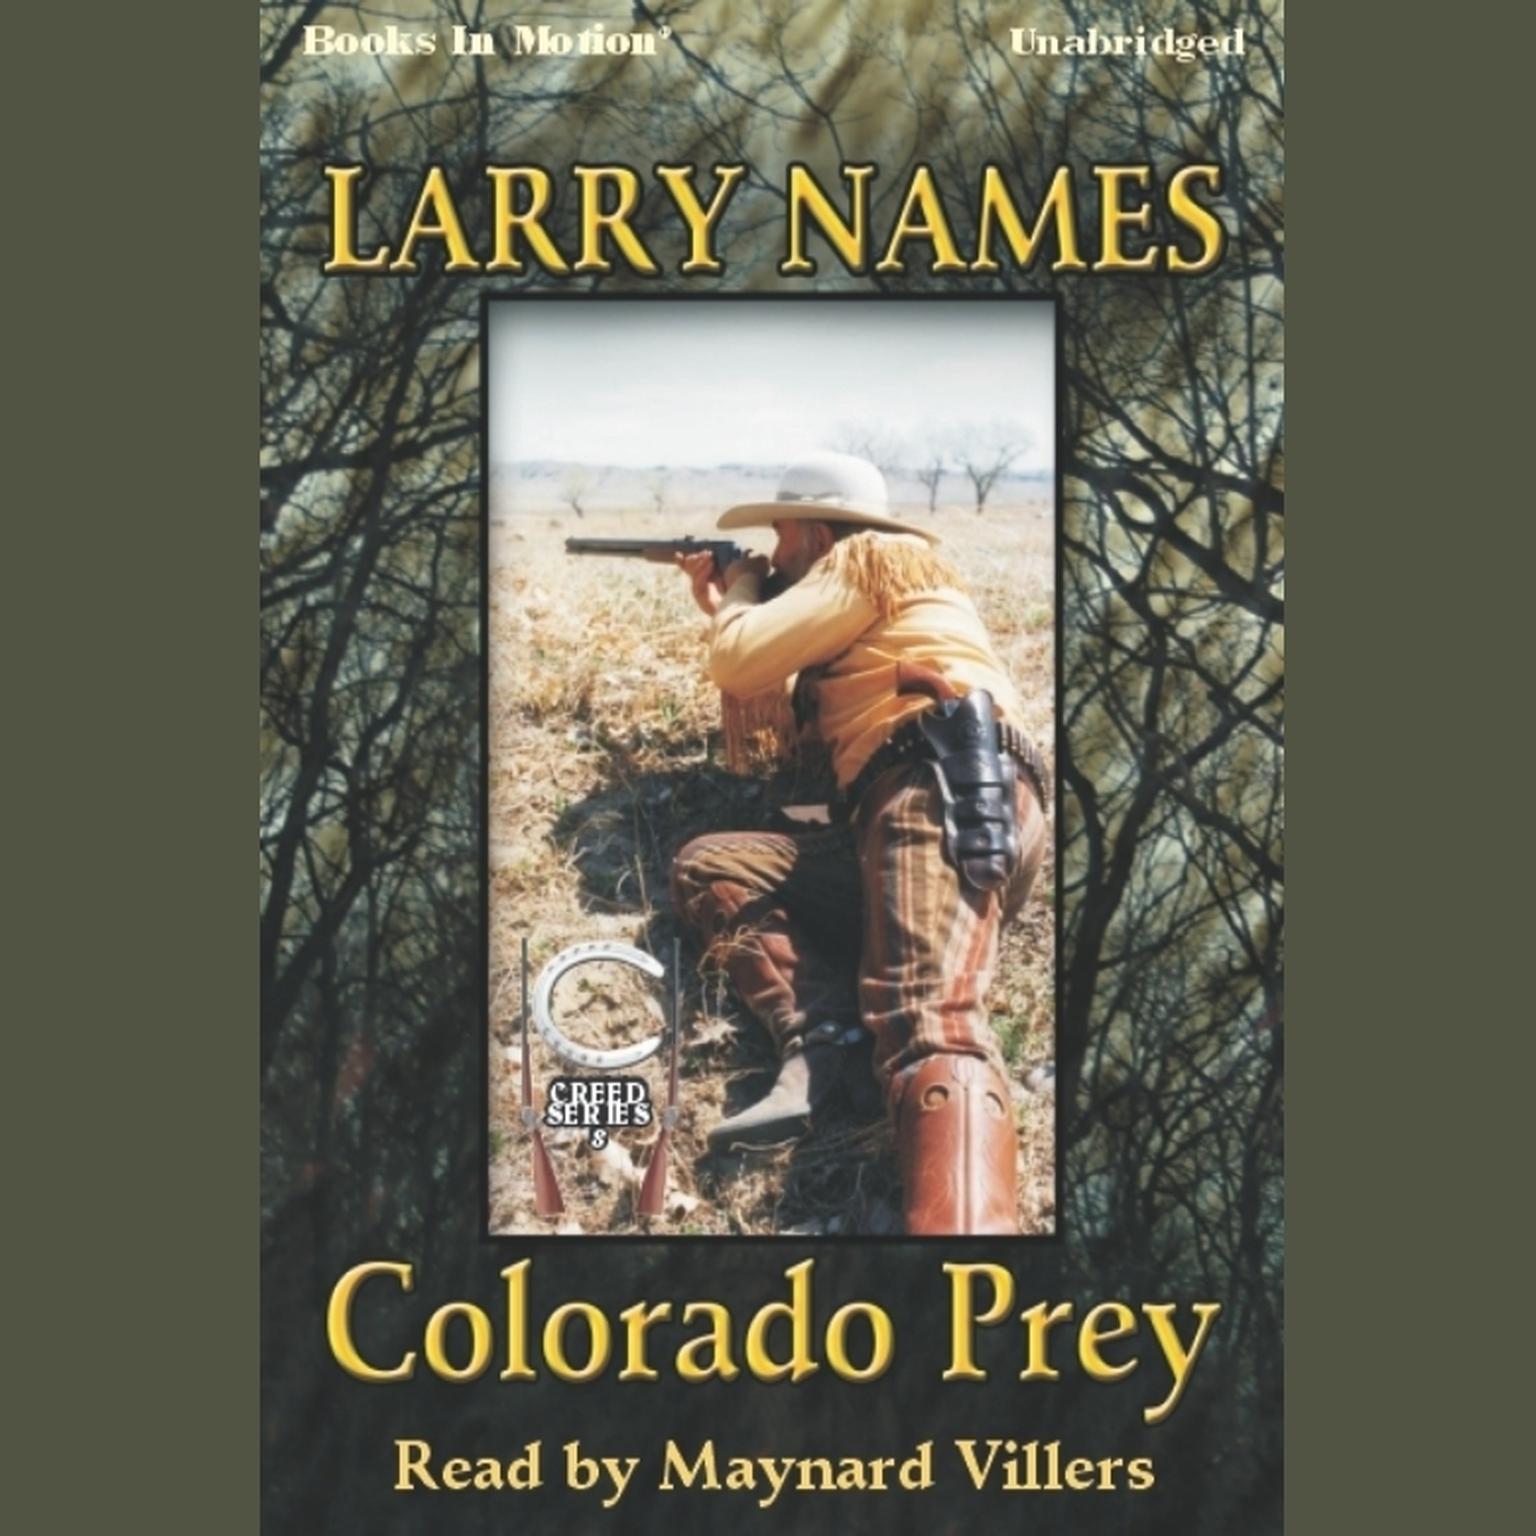 Colorado Prey Audiobook, by Larry Names